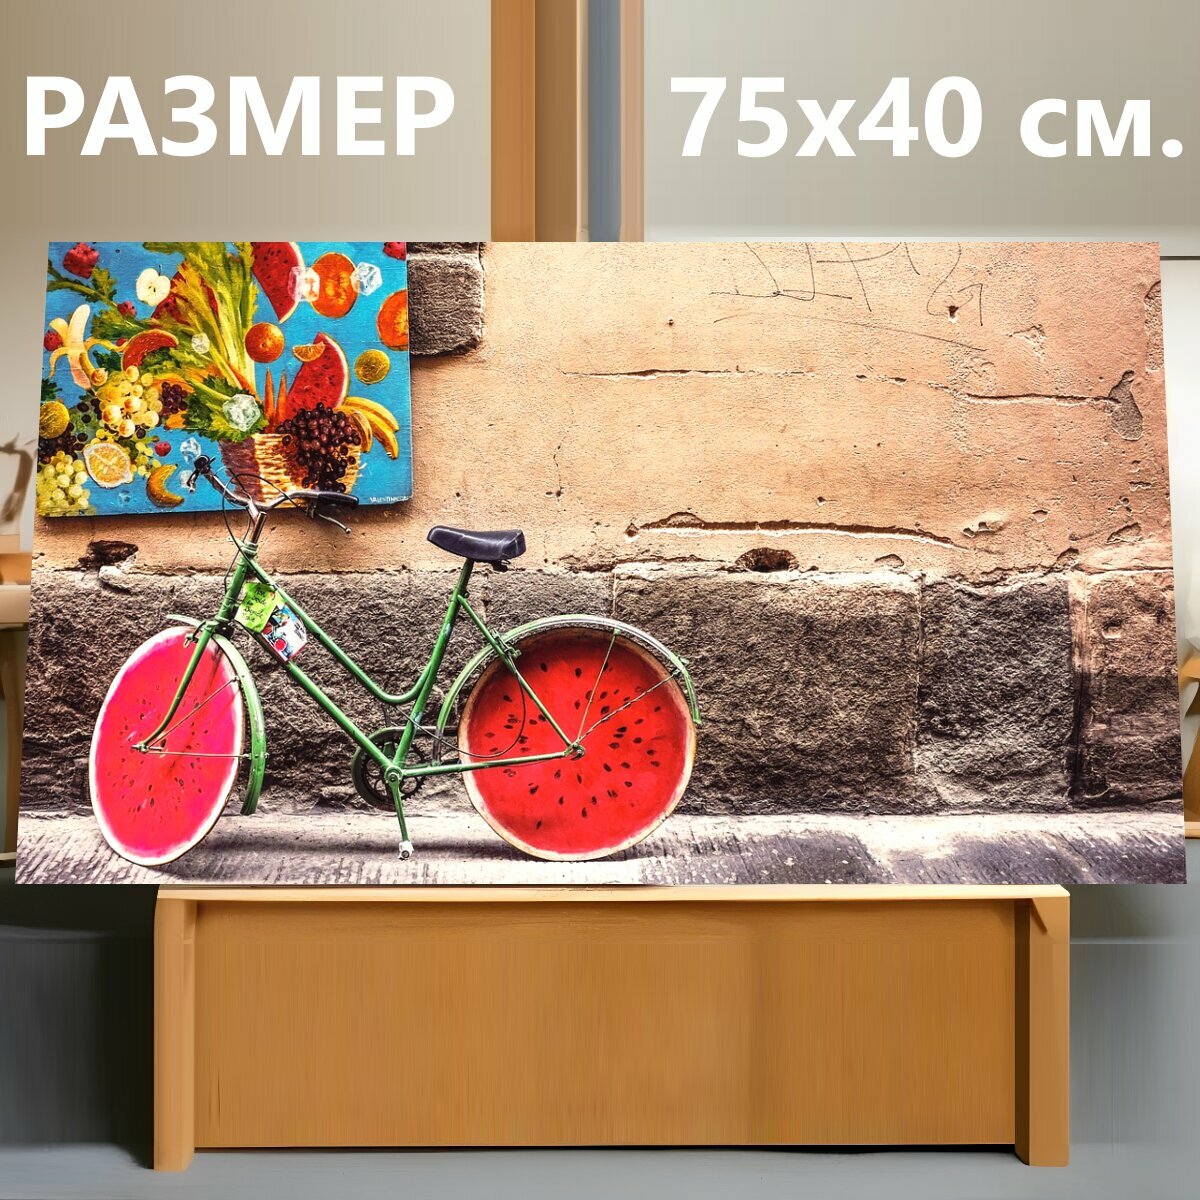 Картина на холсте "Строительство, стена, велосипед" на подрамнике 75х40 см. для интерьера